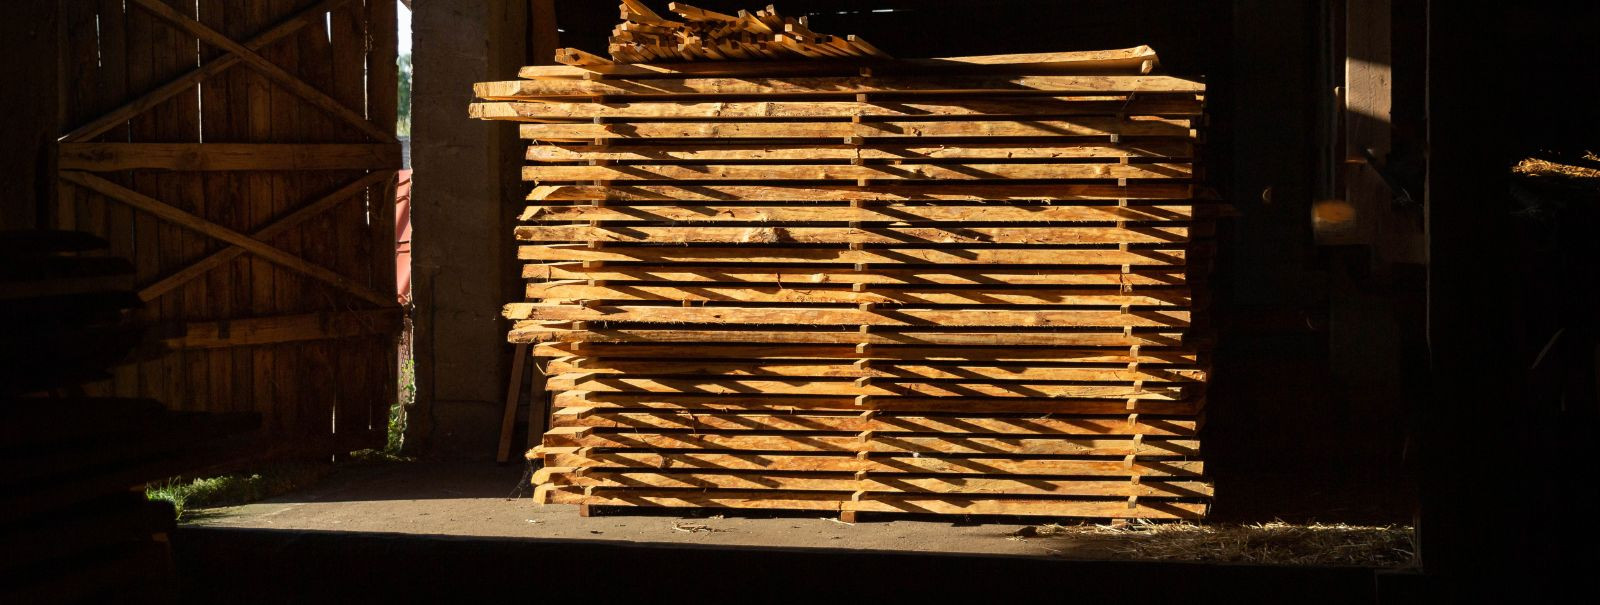 Puidu kuivatamine on kriitiline protsess puidutöötlemise ja saematerjali tööstustes. See stabiliseerib puitu, hoides ära väändumise, lõhenemise ja muud deformat